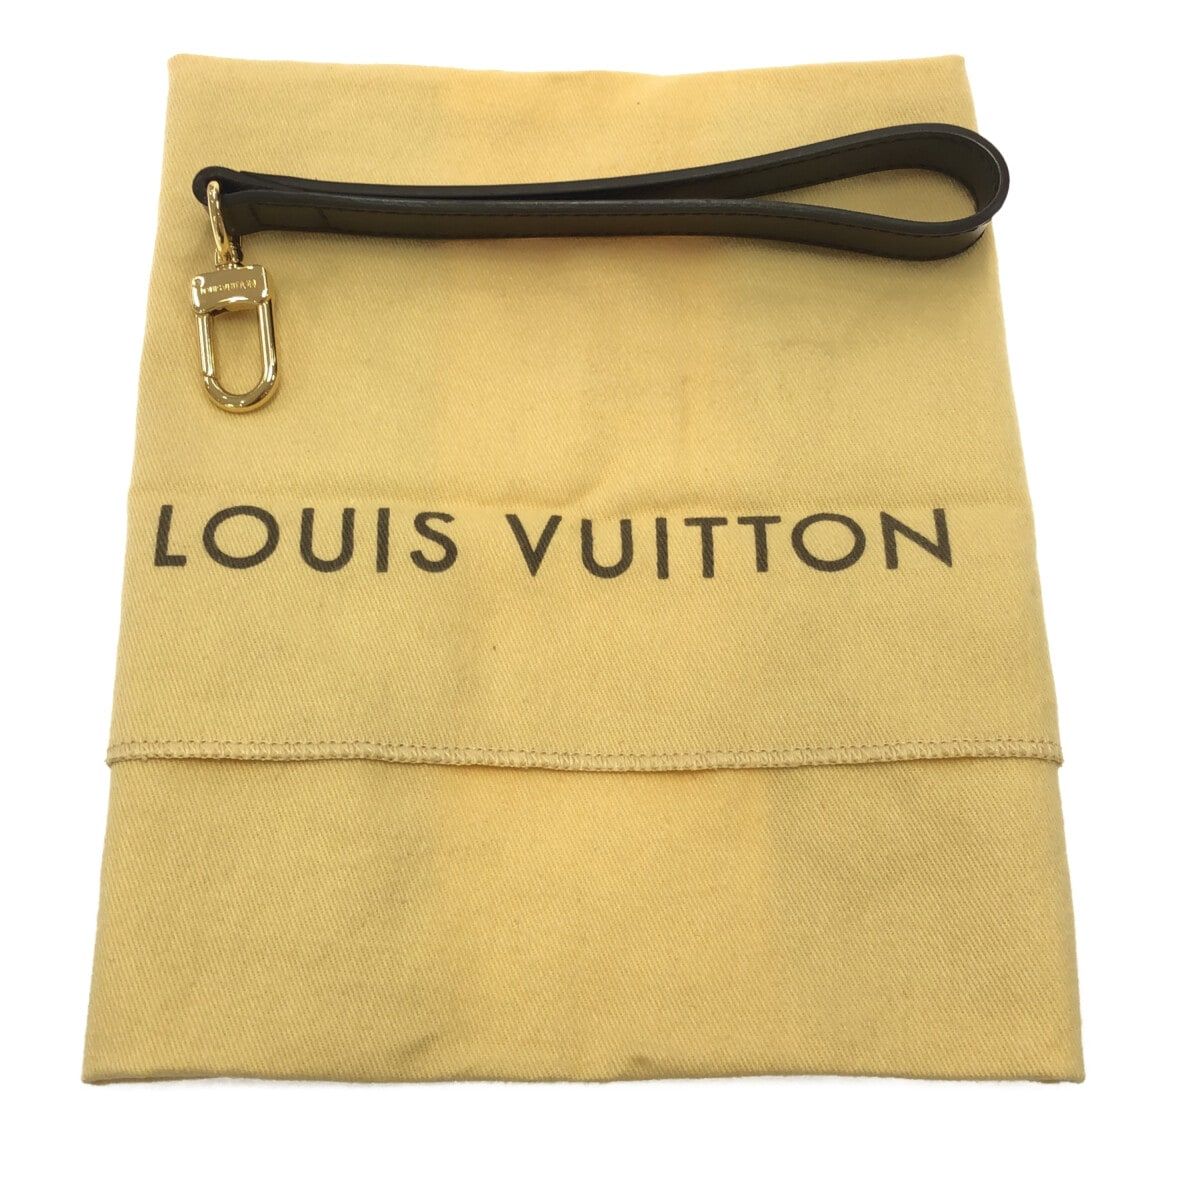 LOUIS VUITTON(ルイヴィトン) セカンドバッグ ダミエ美品 ポシェット・サンポール N41219 エベヌ ダミエ・キャンバス - メルカリ